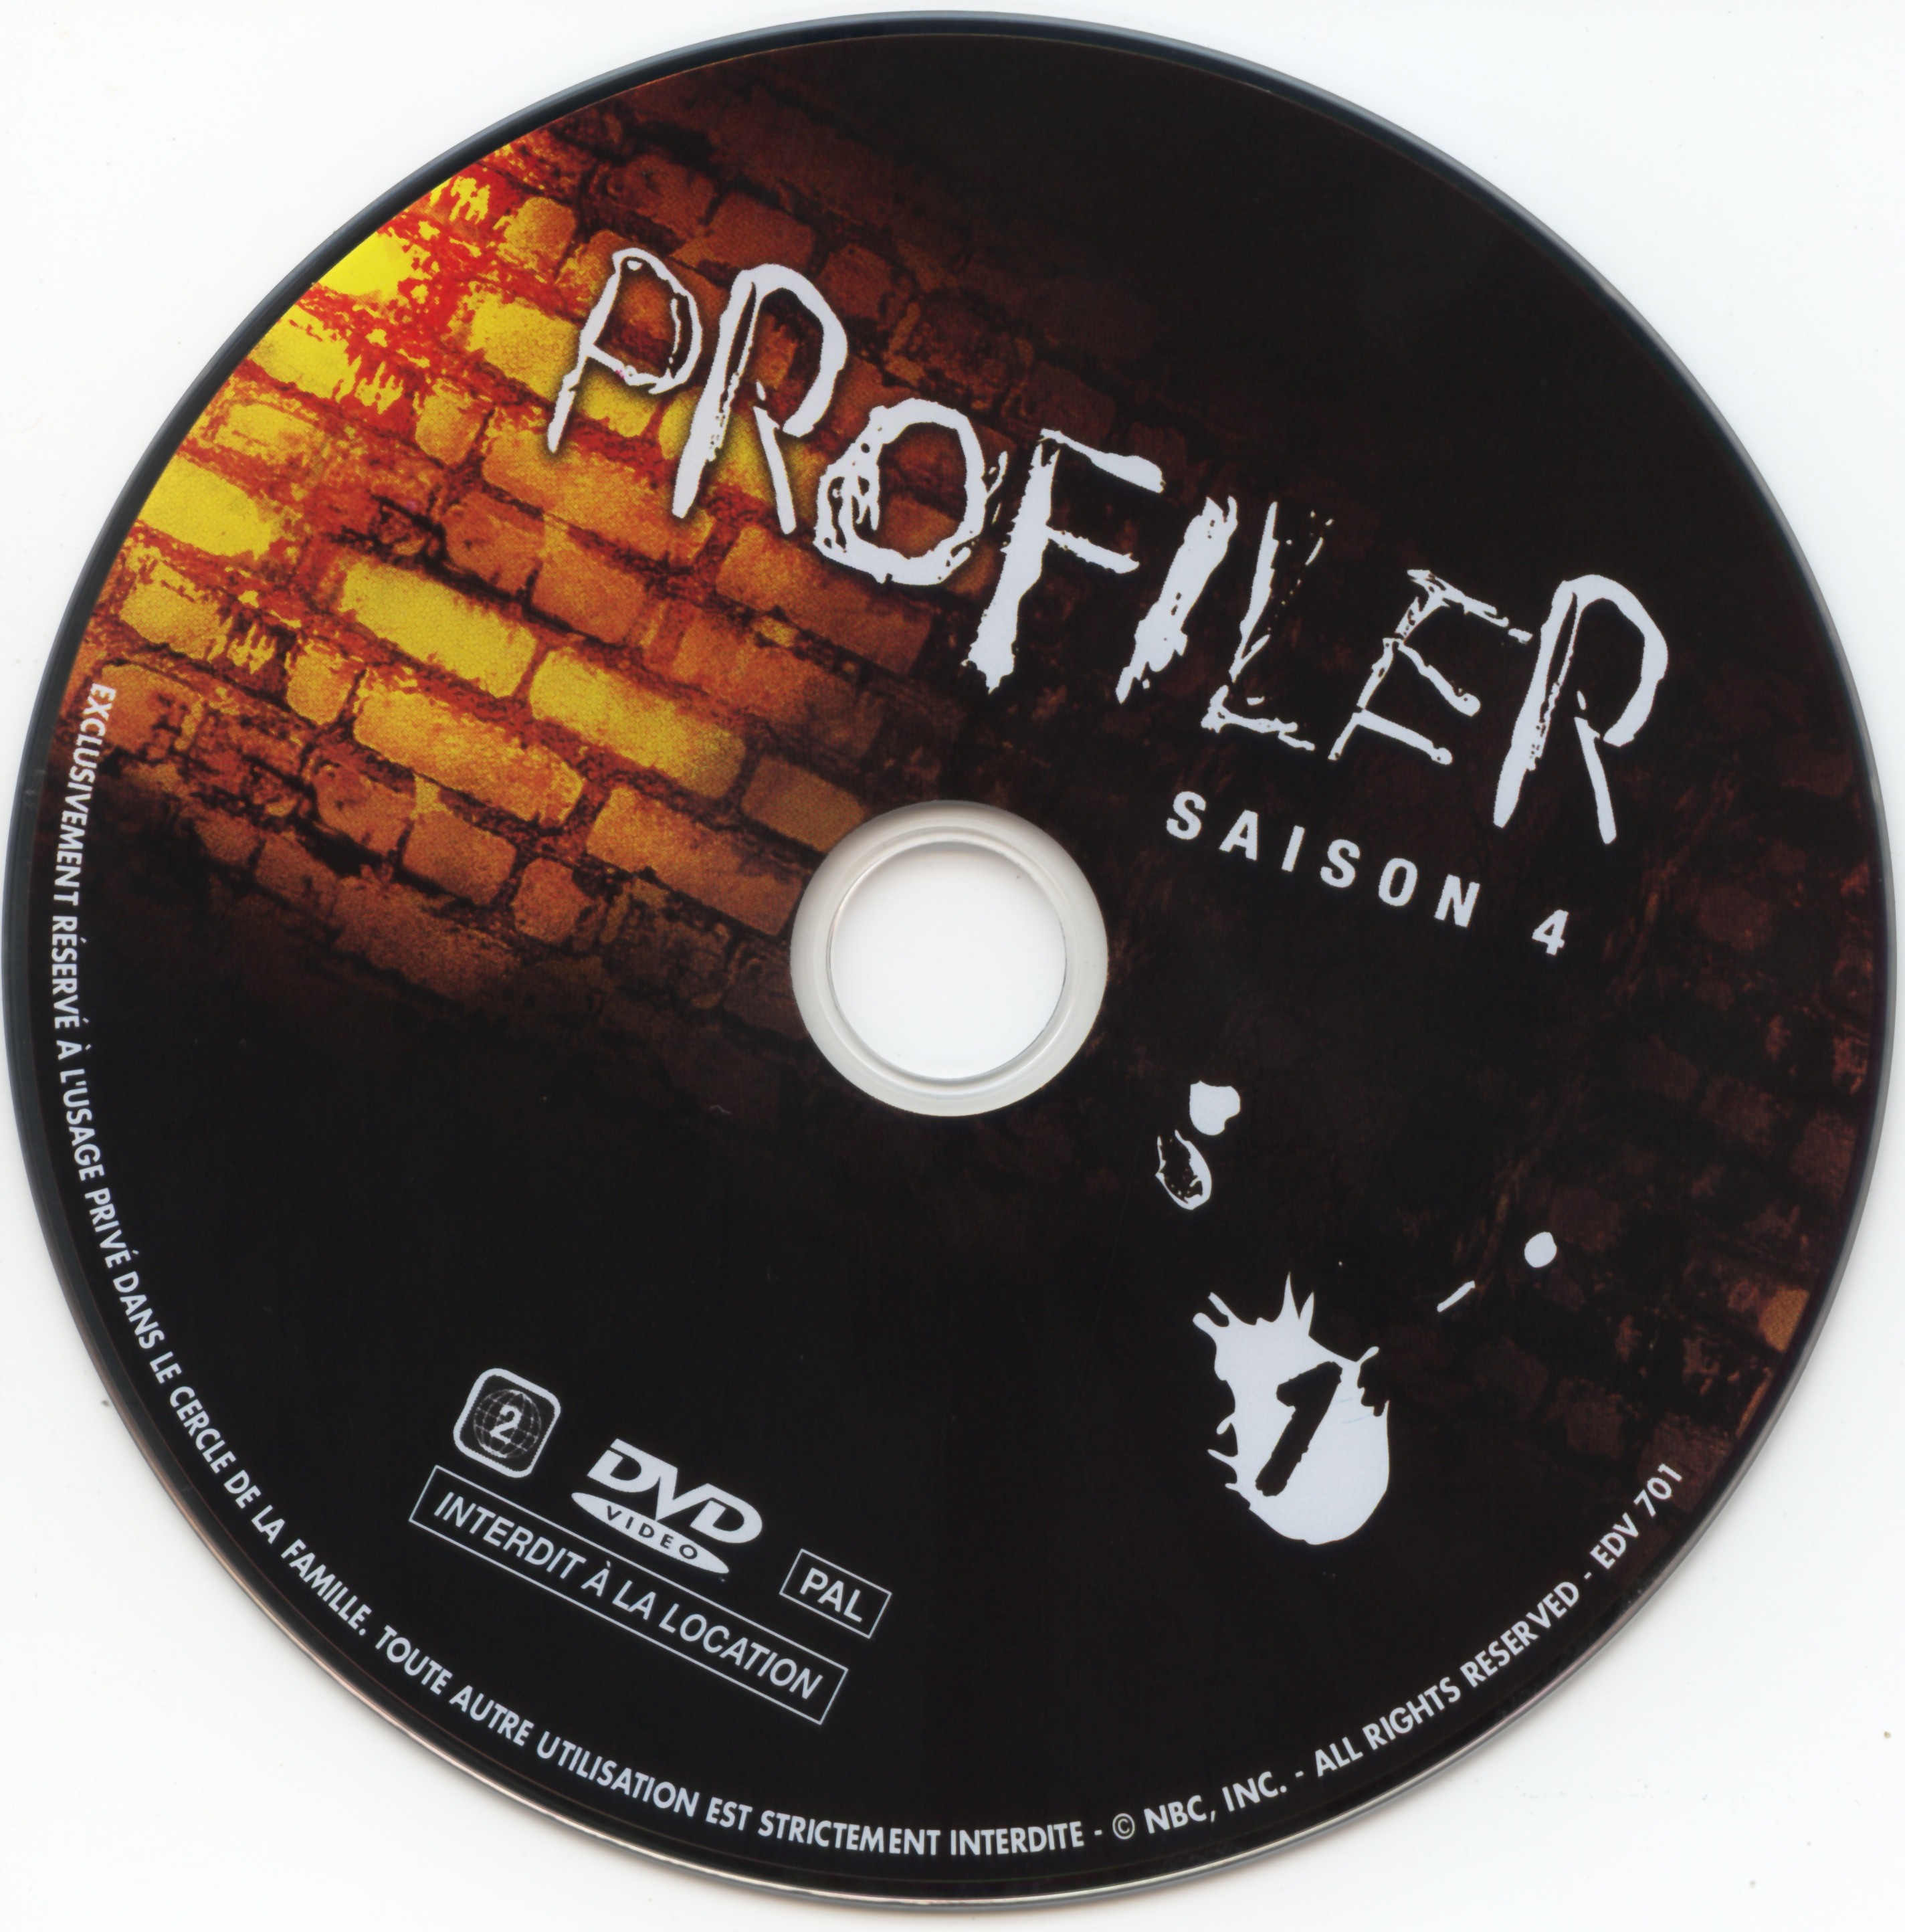 Profiler saison 4 DVD 1